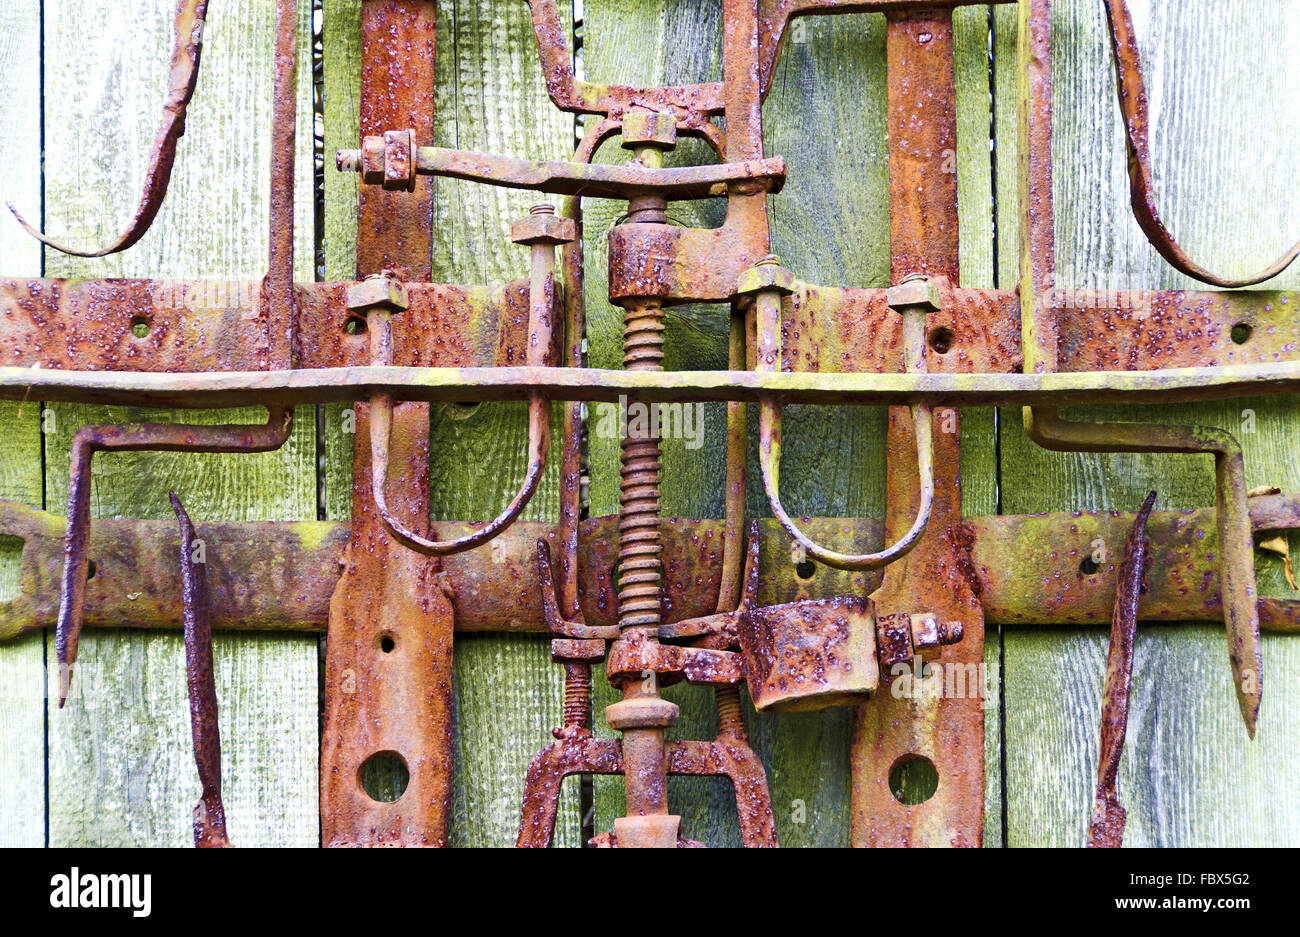 Maquinaria de hierro oxidado en viejas paredes de madera Foto de stock